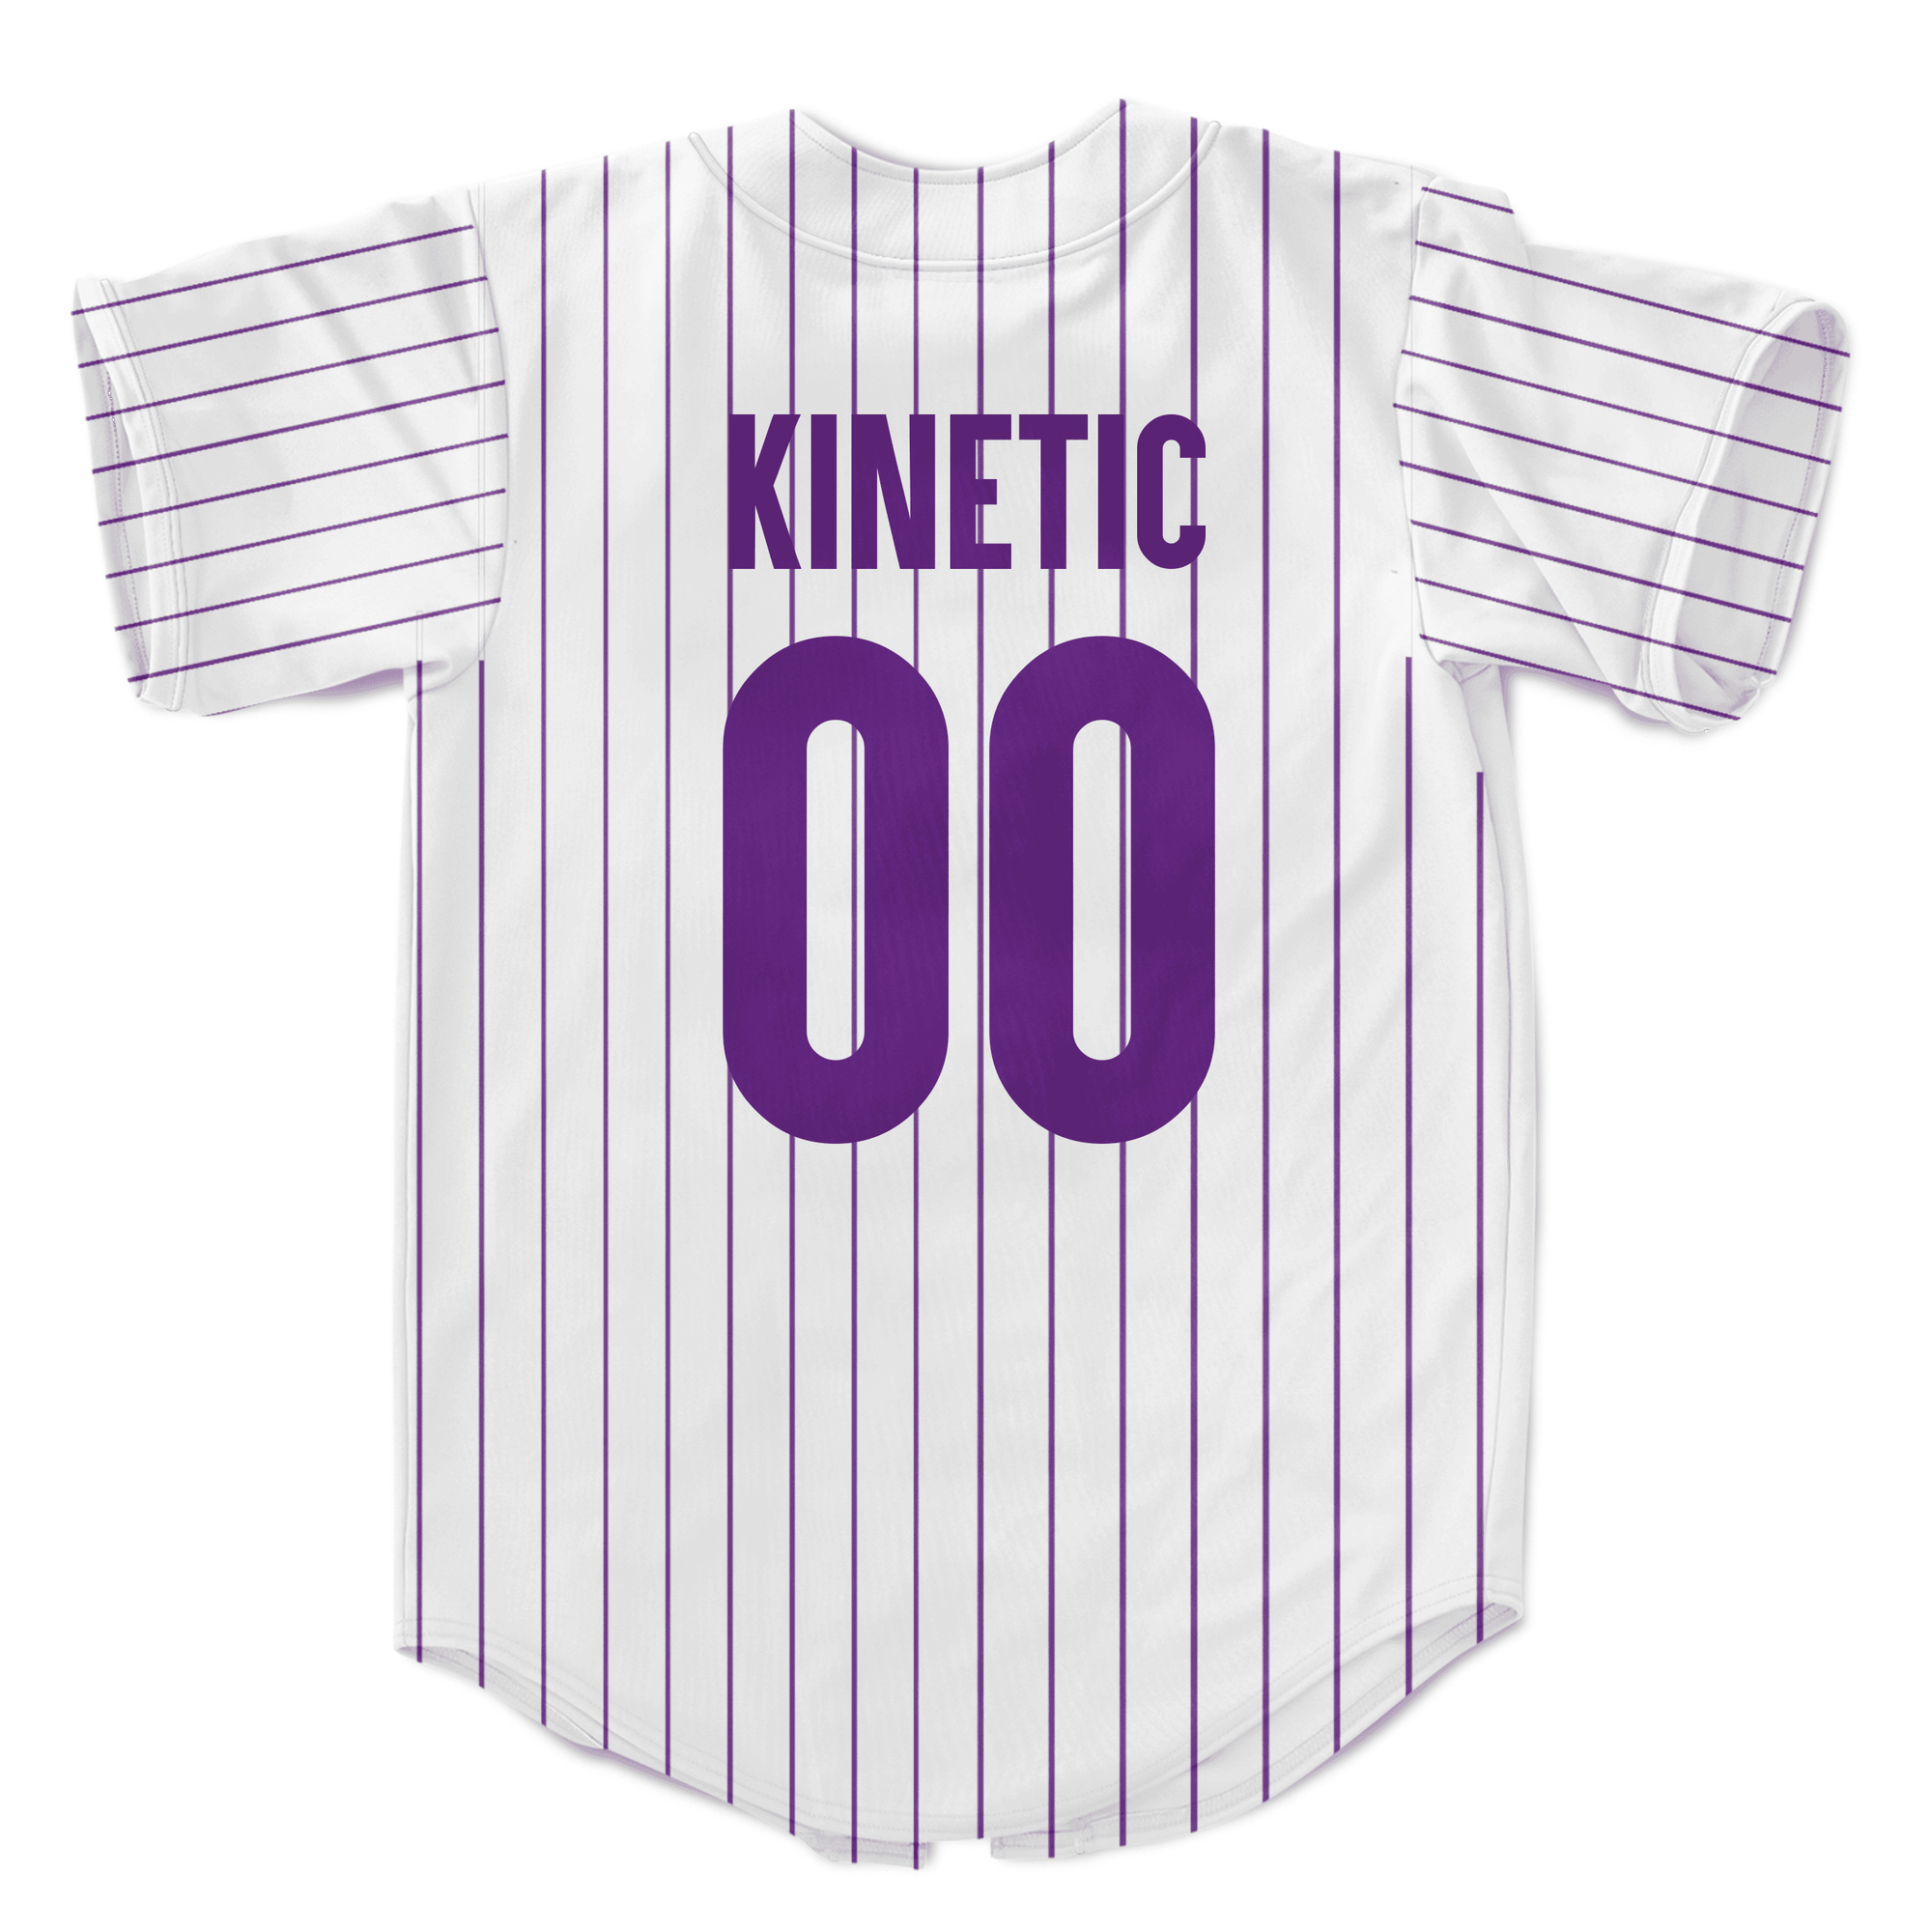 Kappa Delta Rho - Purple Pinstipe - Baseball Jersey